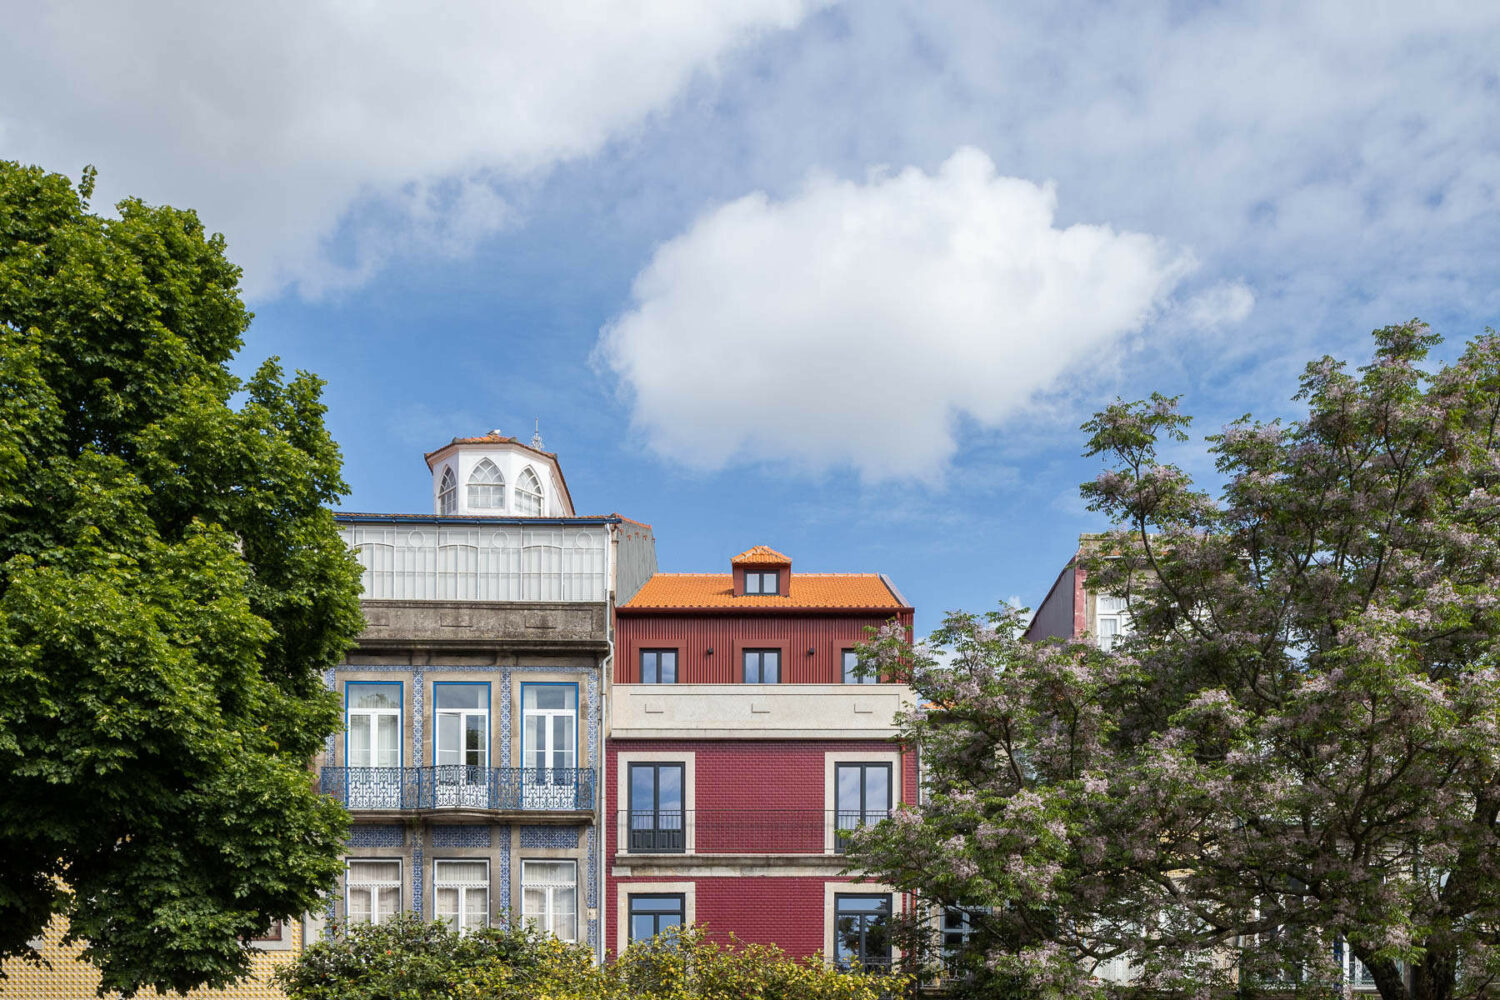 São Lázaro Apartments by Floret Arquitectura